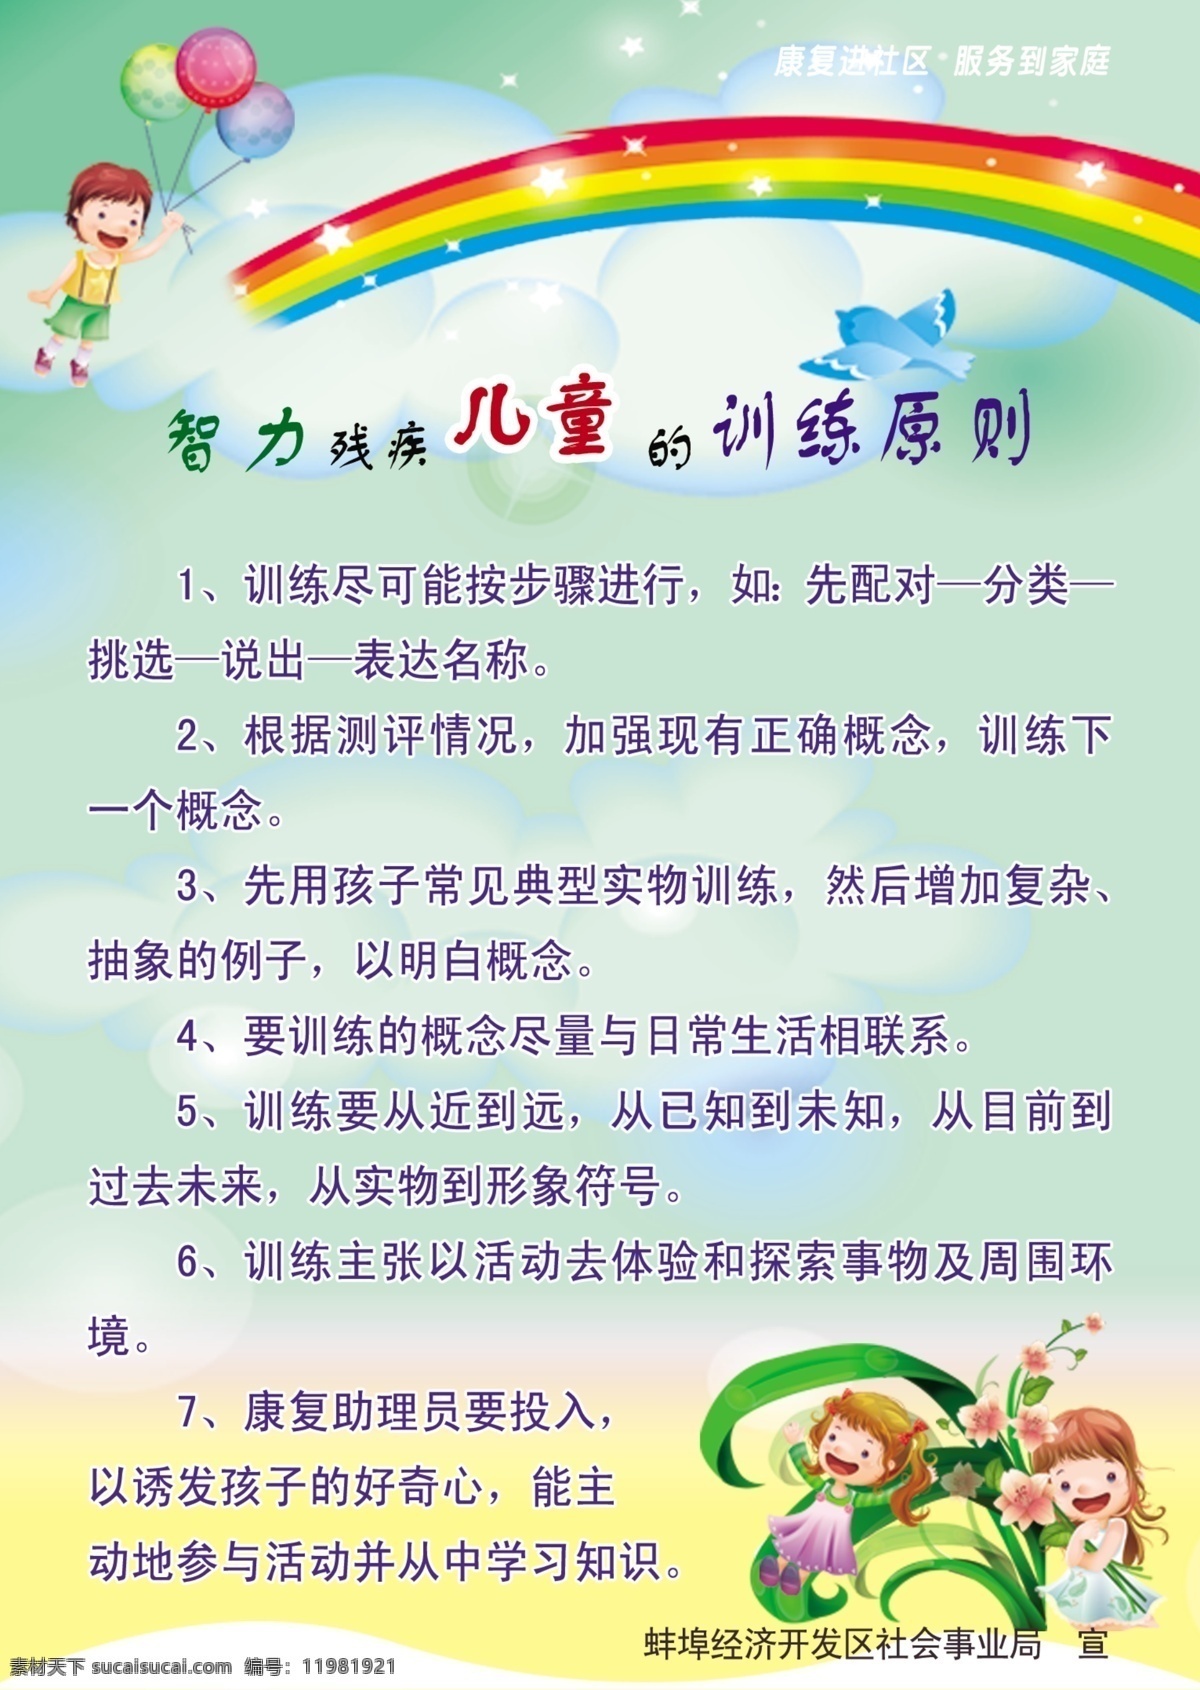 智力 残疾 儿童 训练 原则 彩虹 小孩 背景 植物 dm宣传单 广告设计模板 源文件